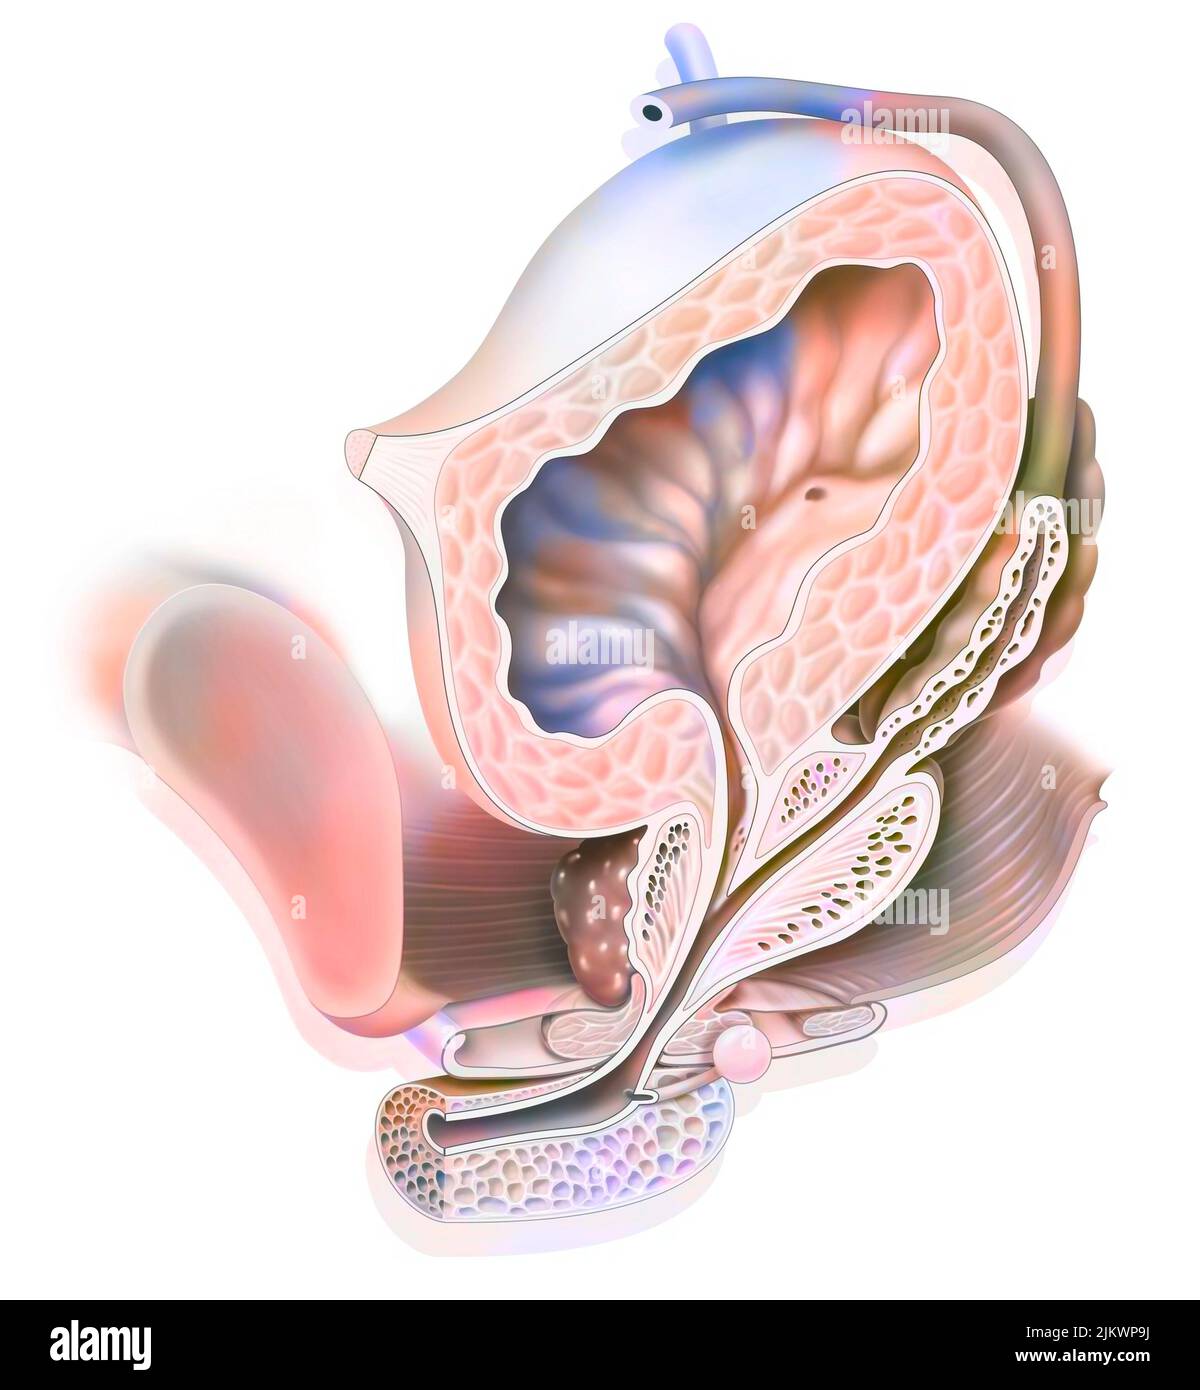 Anatomía del sistema urogenital masculino con uréter, vejiga. Foto de stock